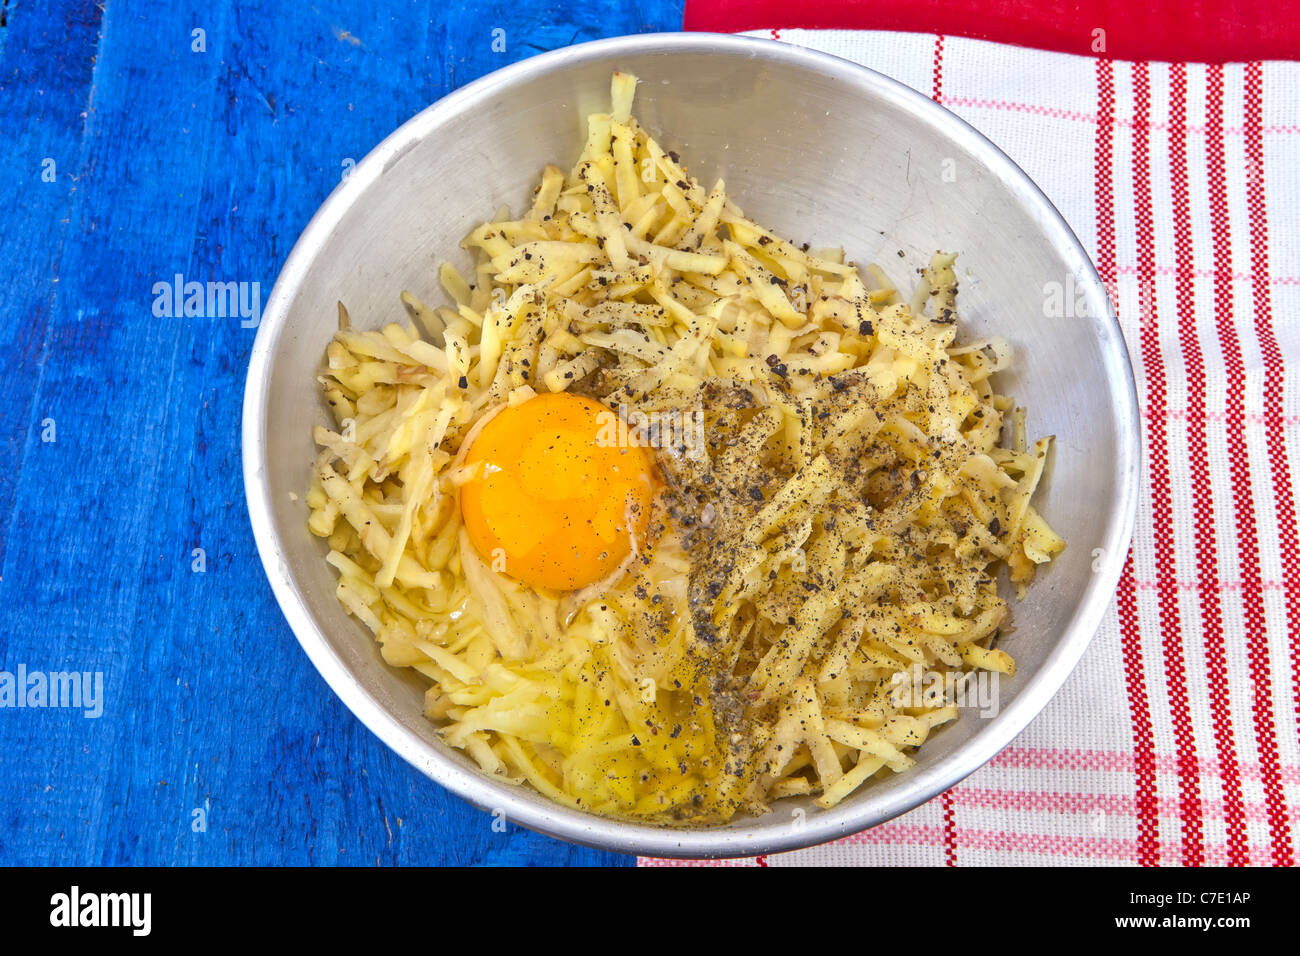 Patate grattugiate con uovo crudo in una ciotola Foto Stock